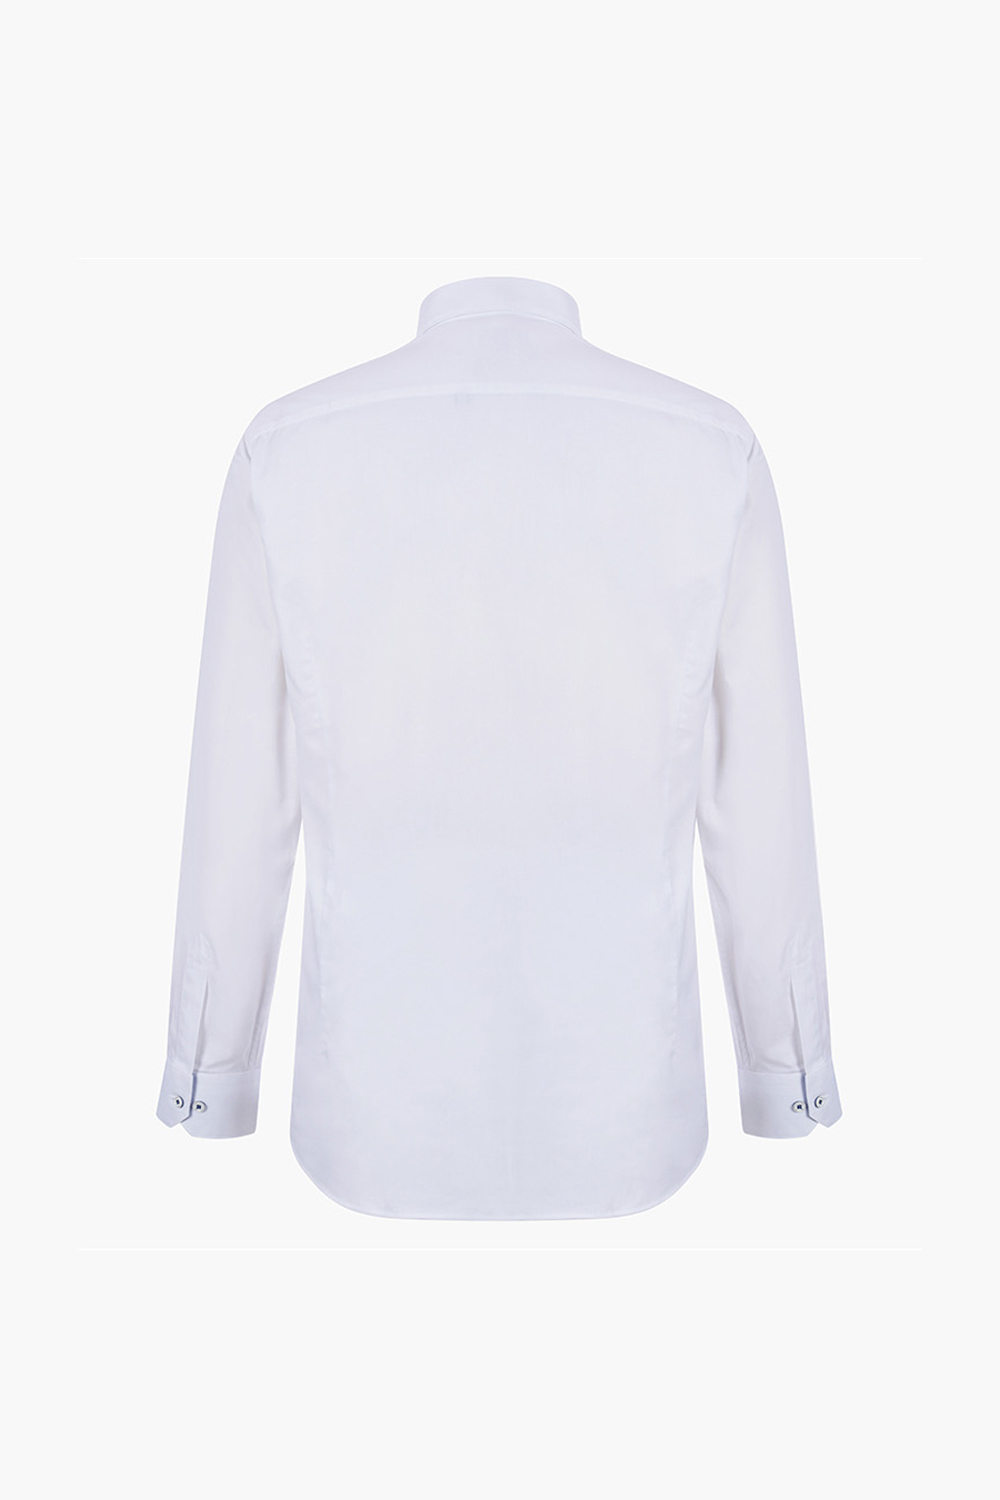 [공식스토어] 슬림핏 면혼방 배색 솔리드 긴소매셔츠 TY2FBS002WH